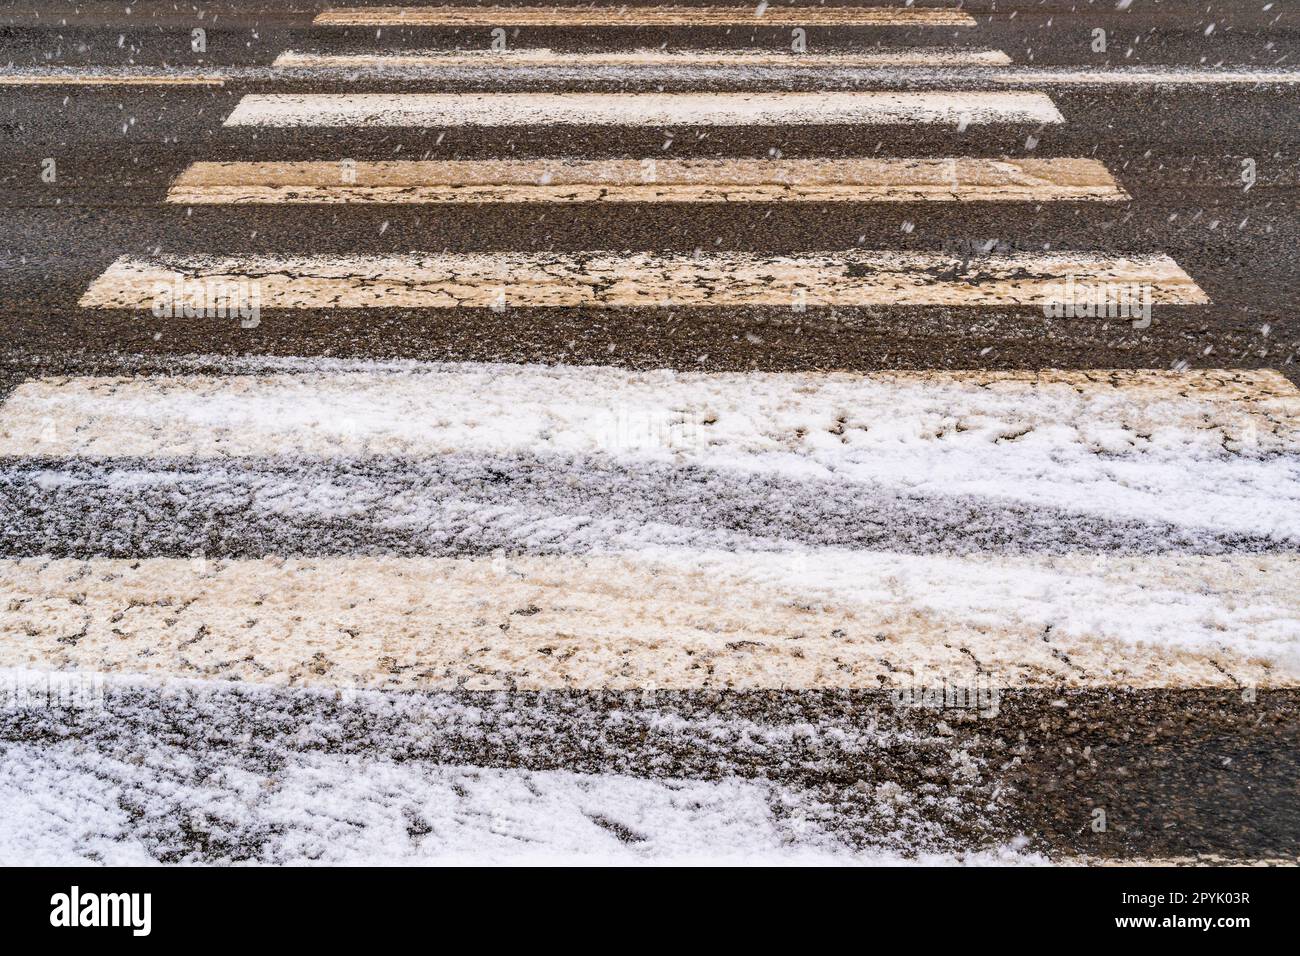 Neve, ghiaccio e fango invernale in un passaggio pedonale Foto Stock